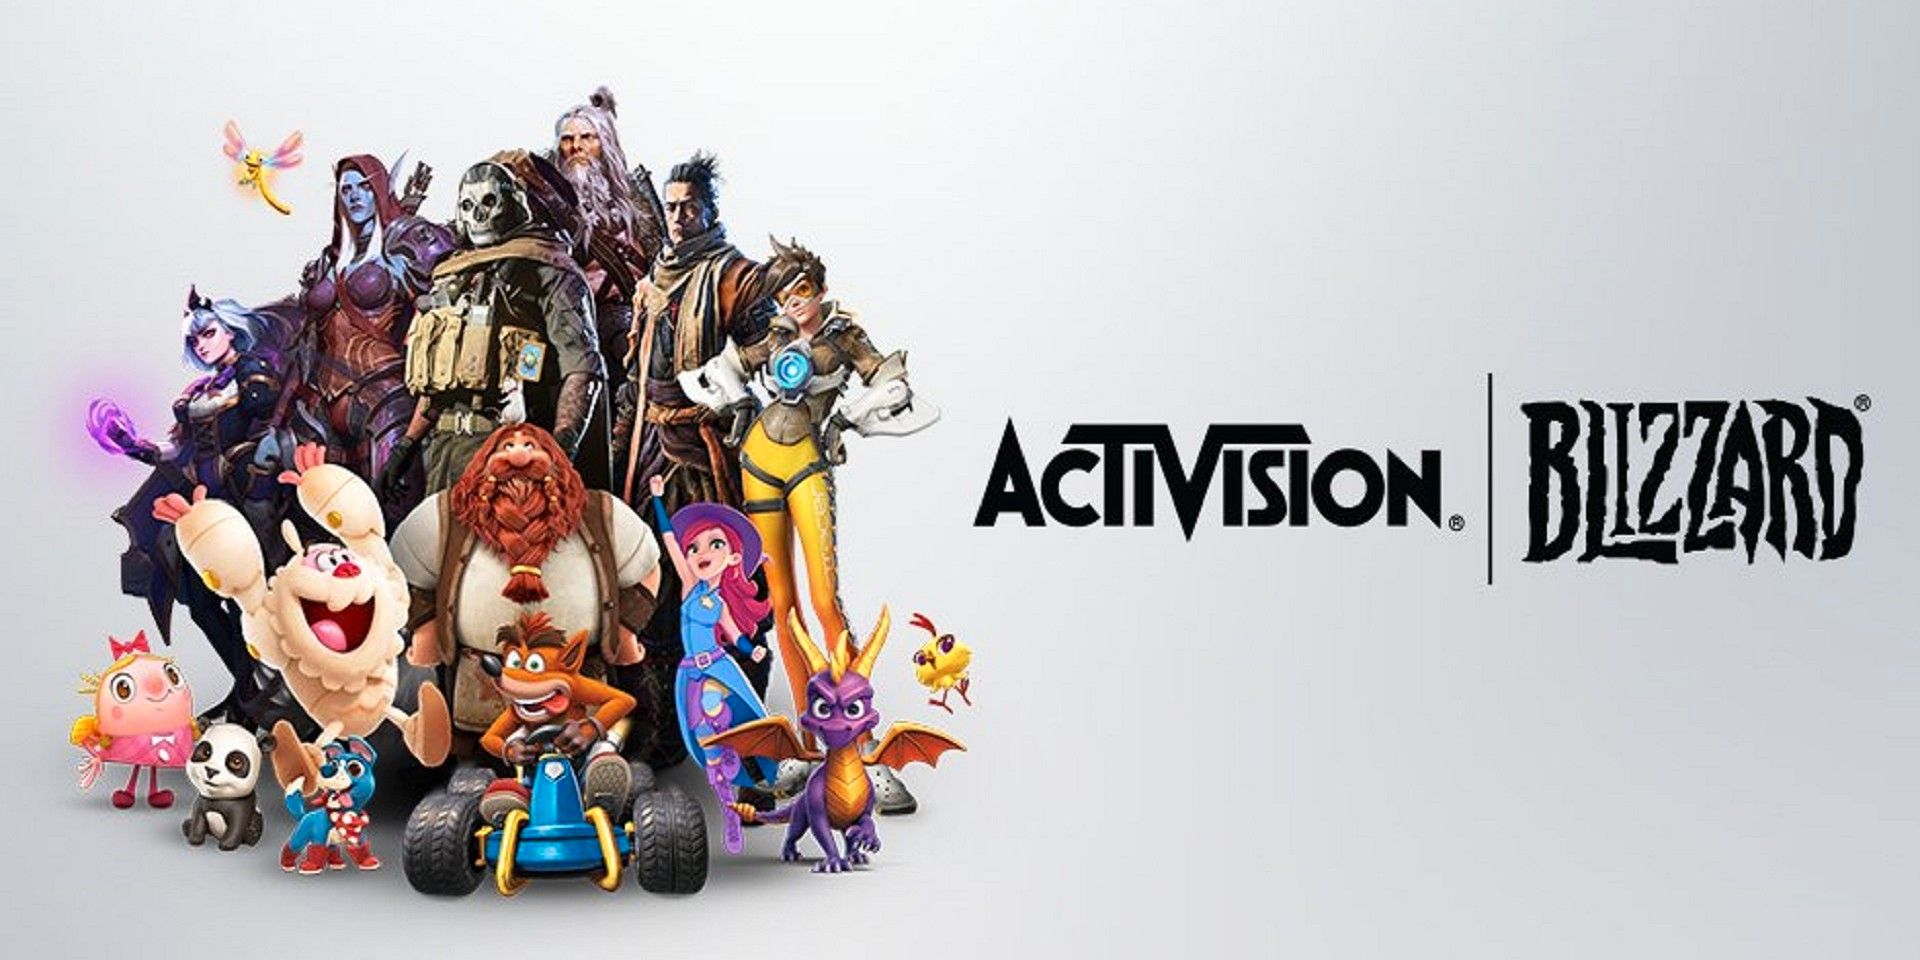 A los probadores de control de calidad de Activision se les otorga un puesto y un aumento de tiempo completo